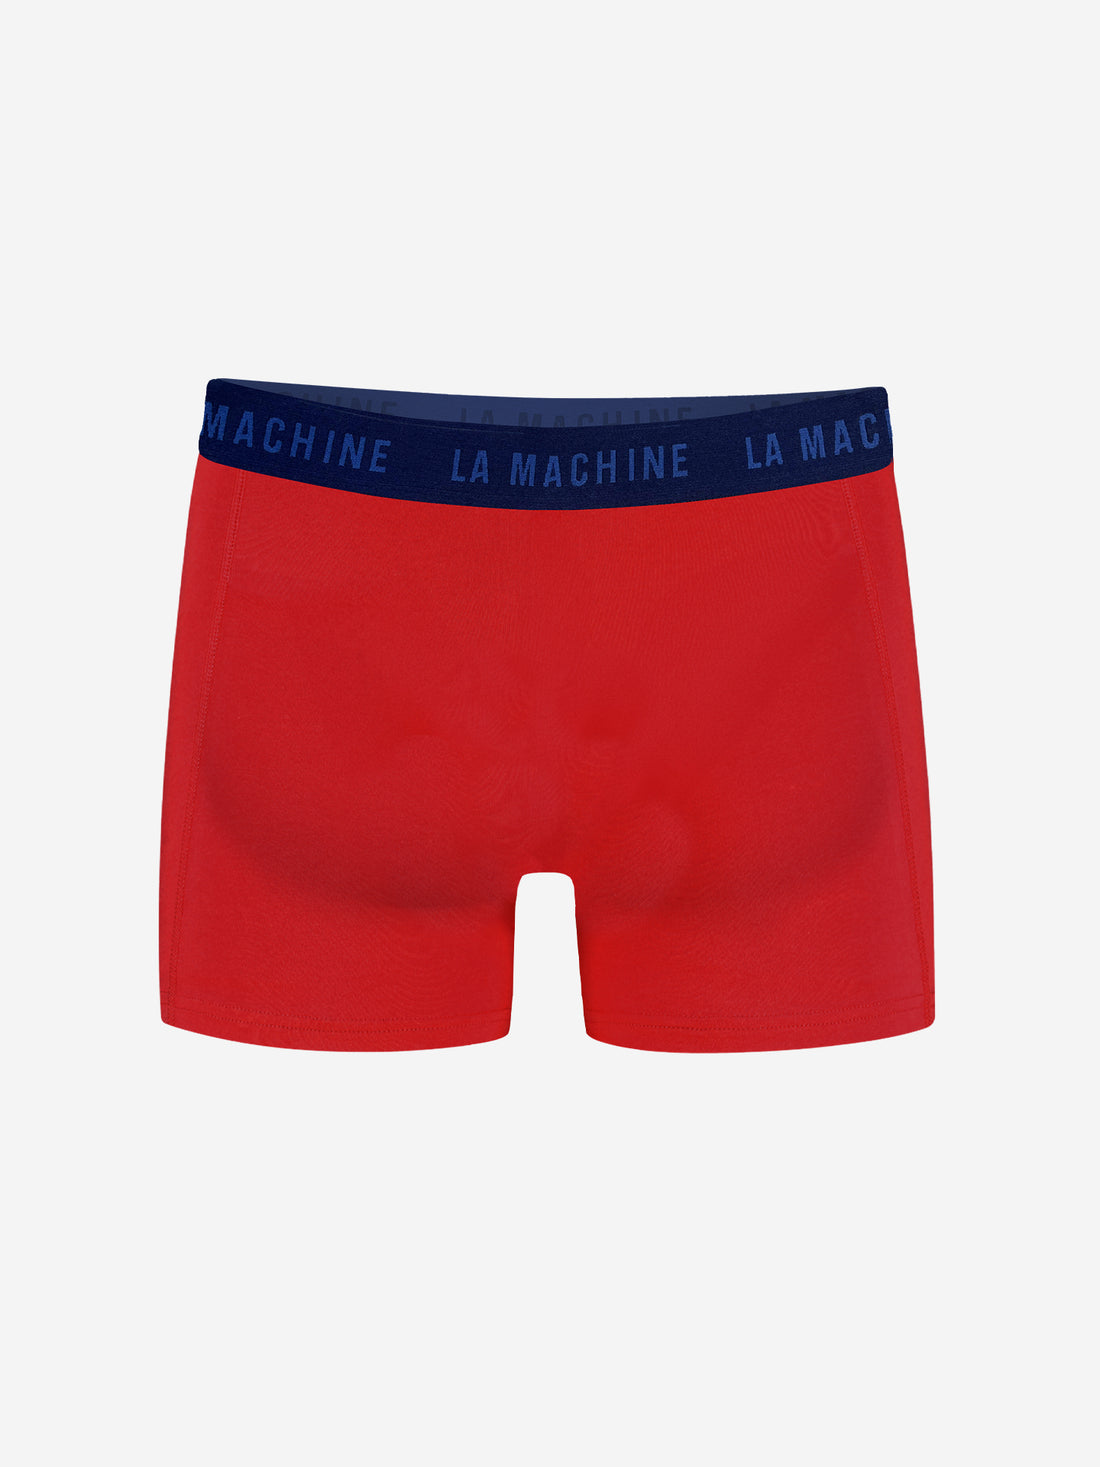 La Machine - Boxershorts - Vuelta Red